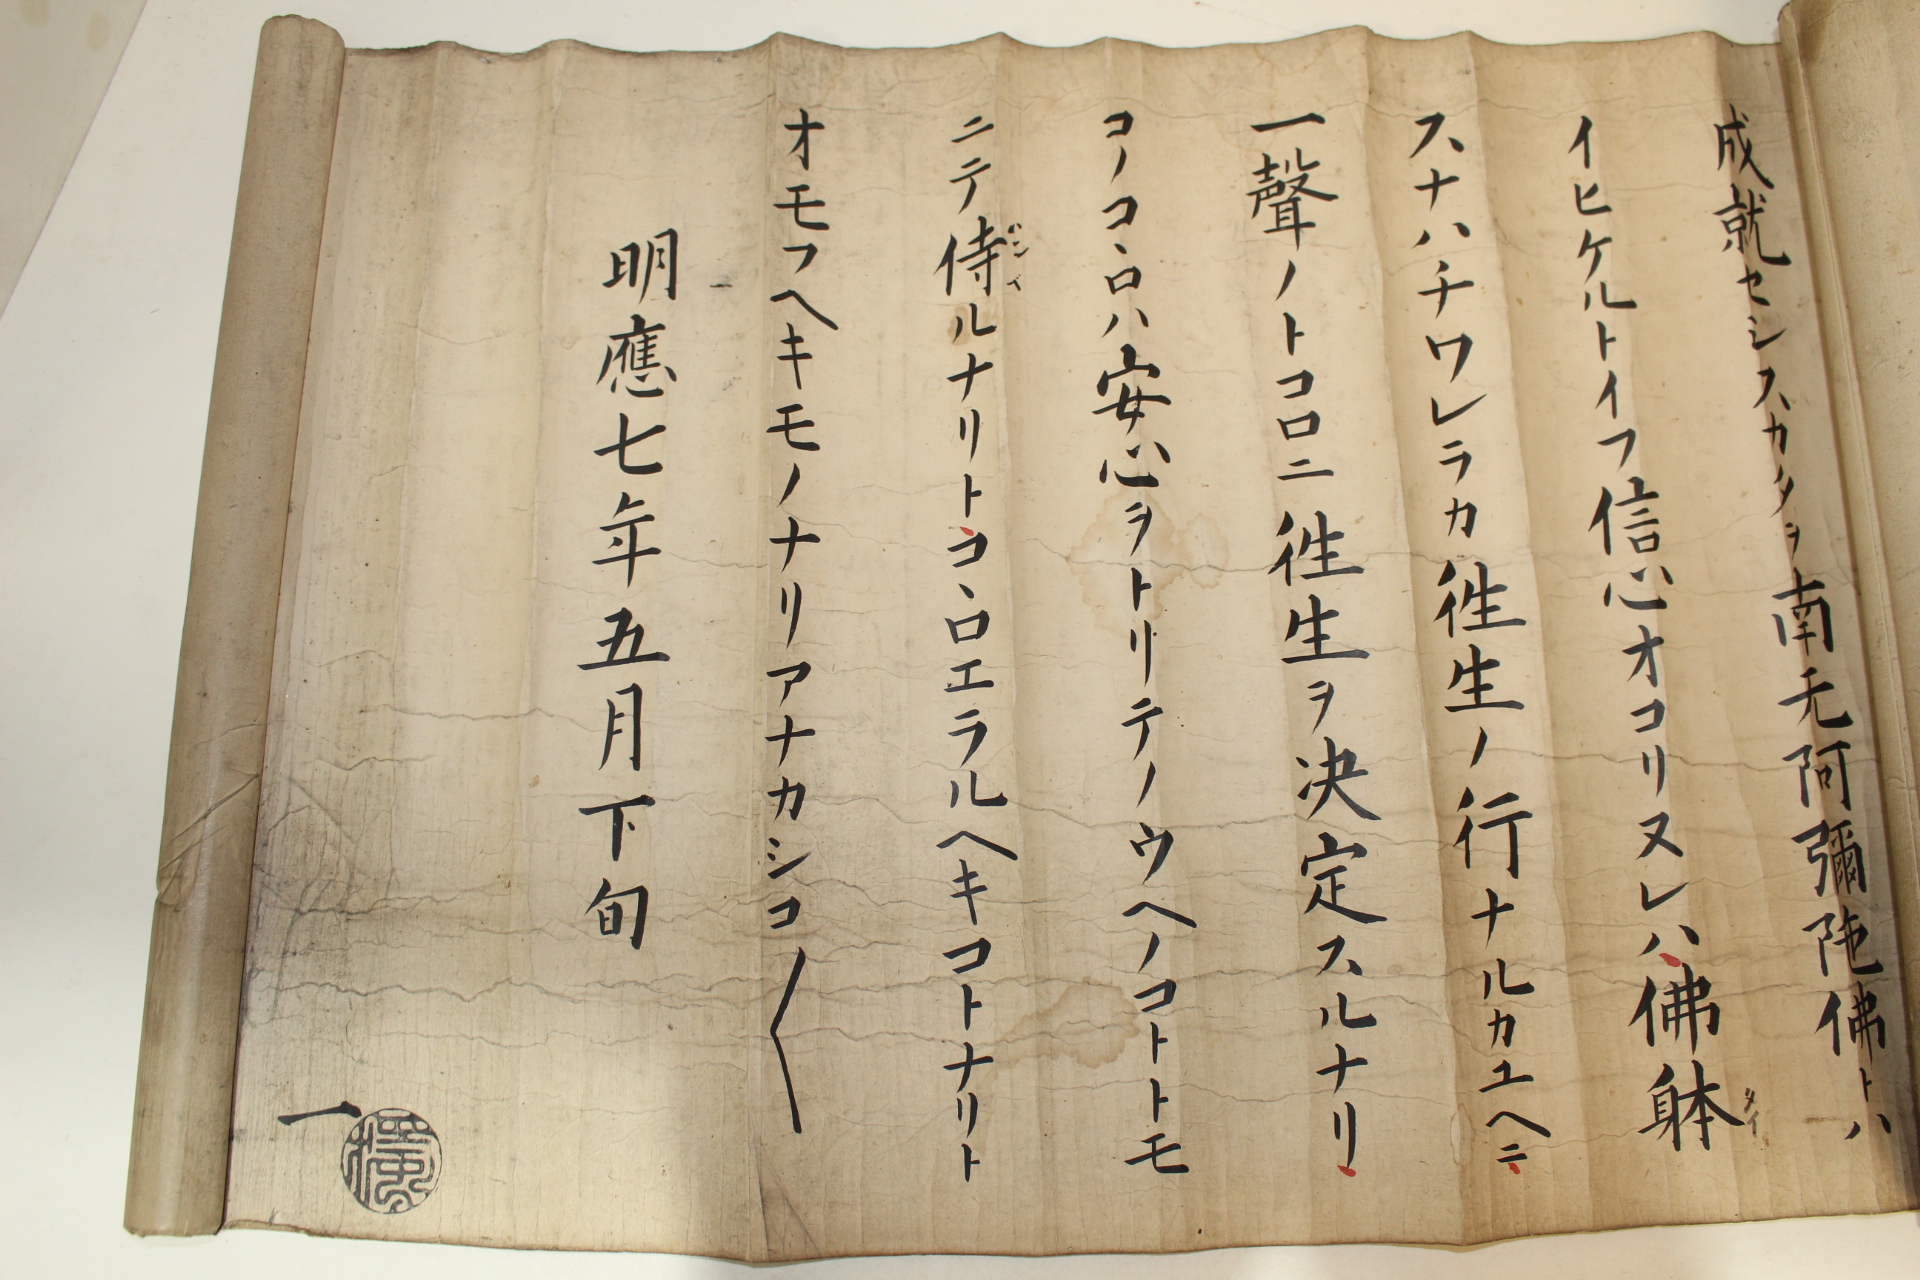 1498년(明應7年) 일본화지 불경 두루마리 4축